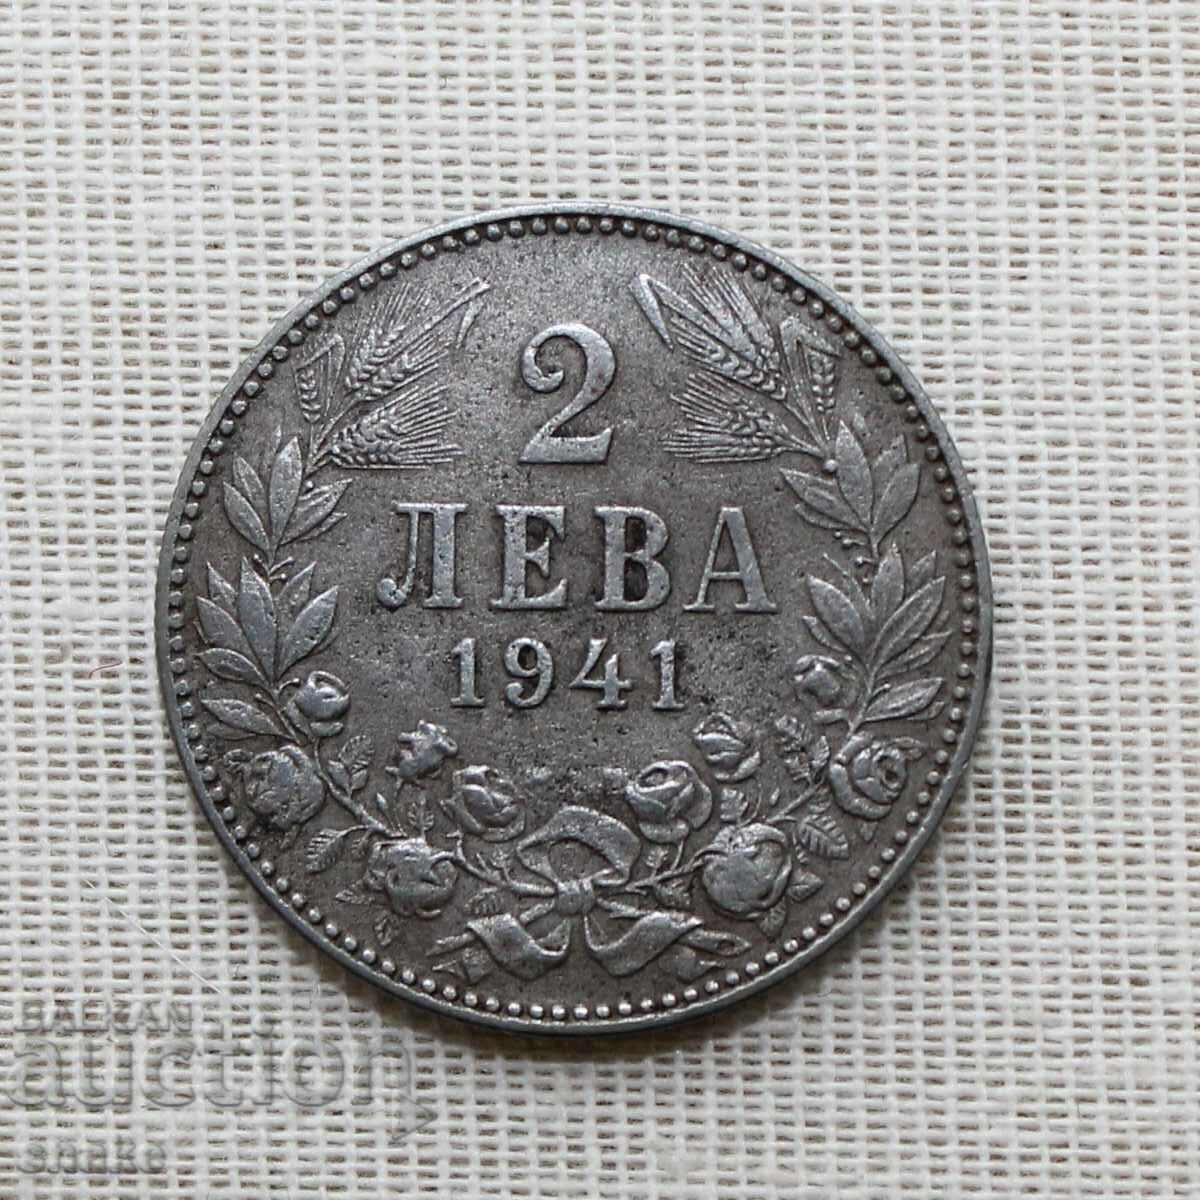 Bulgaria 2 BGN 1941 Top coin.